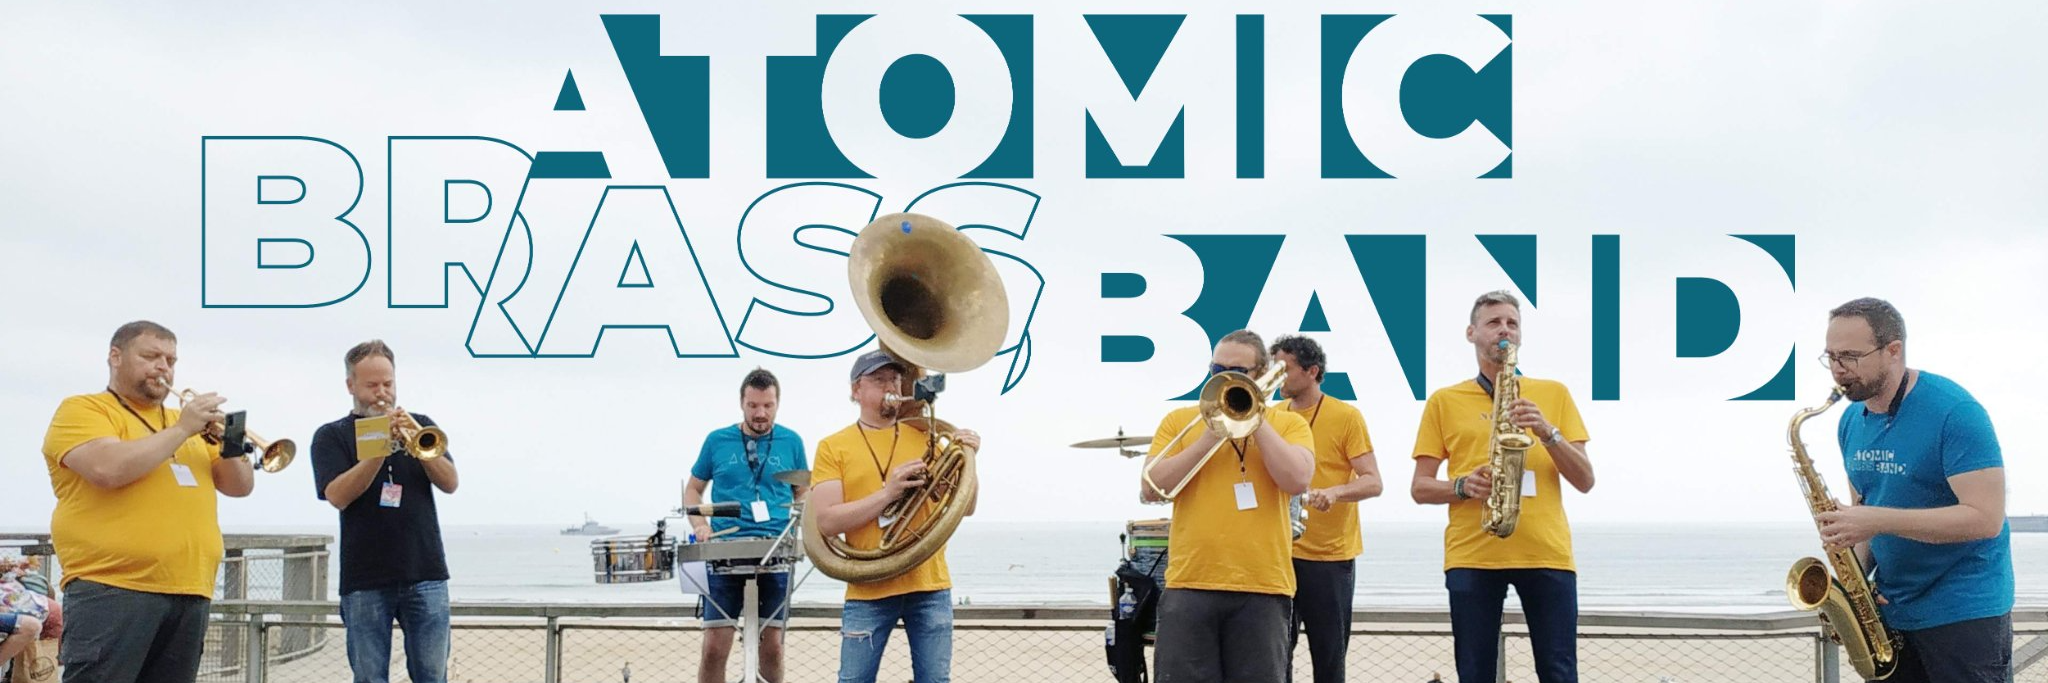 Atomic Brass Band, groupe de musique Jazz en représentation à Vendée - photo de couverture n° 3